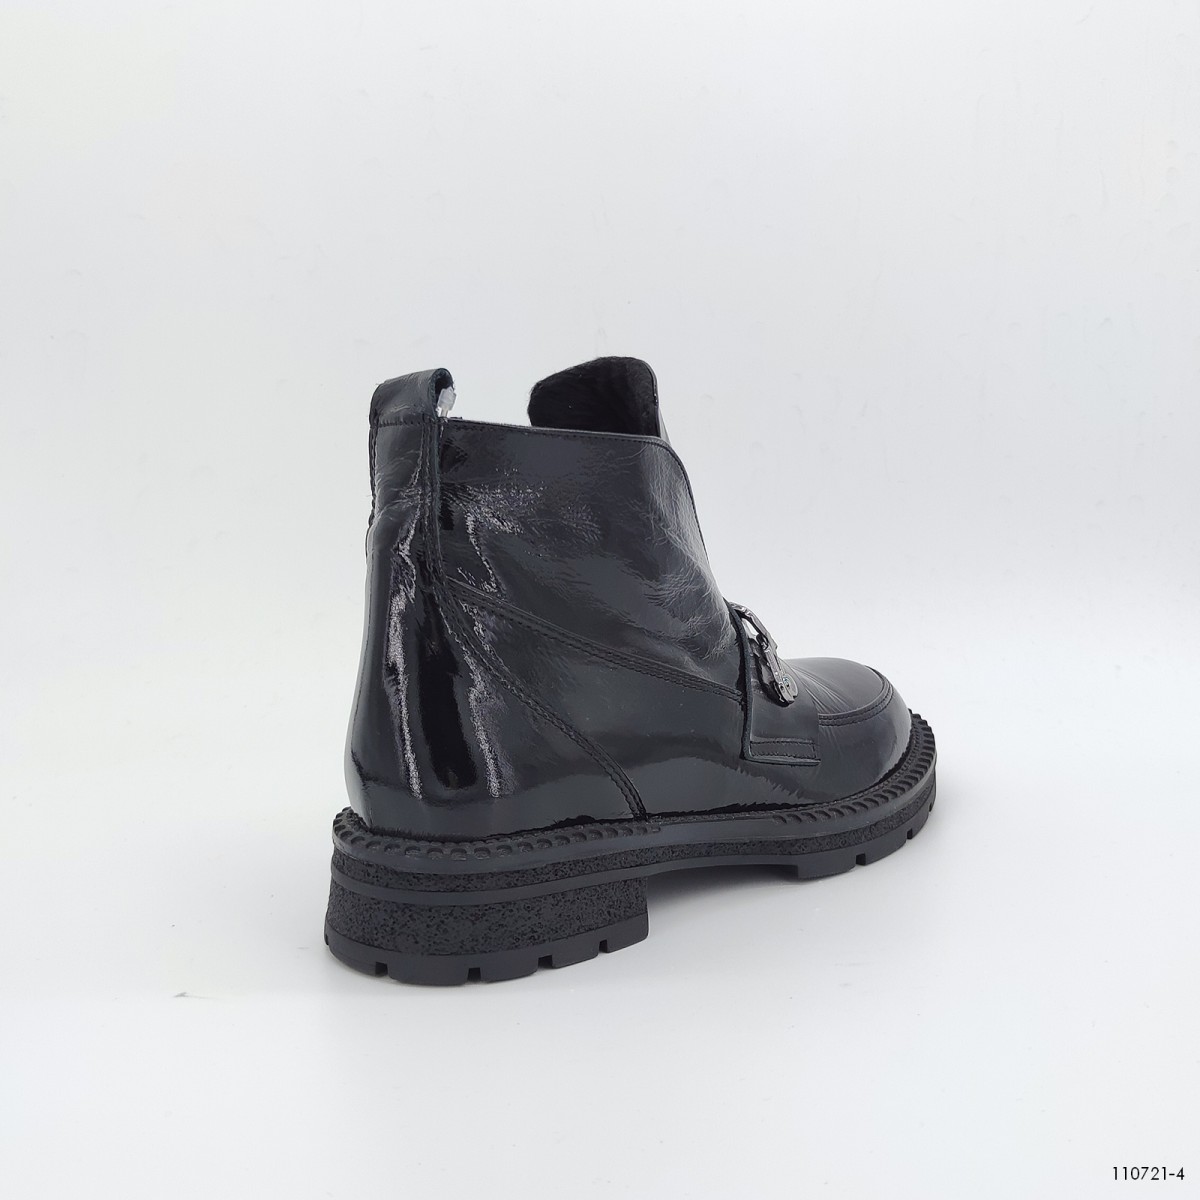 110721, ботинки Casoreti, женские зимние, черный